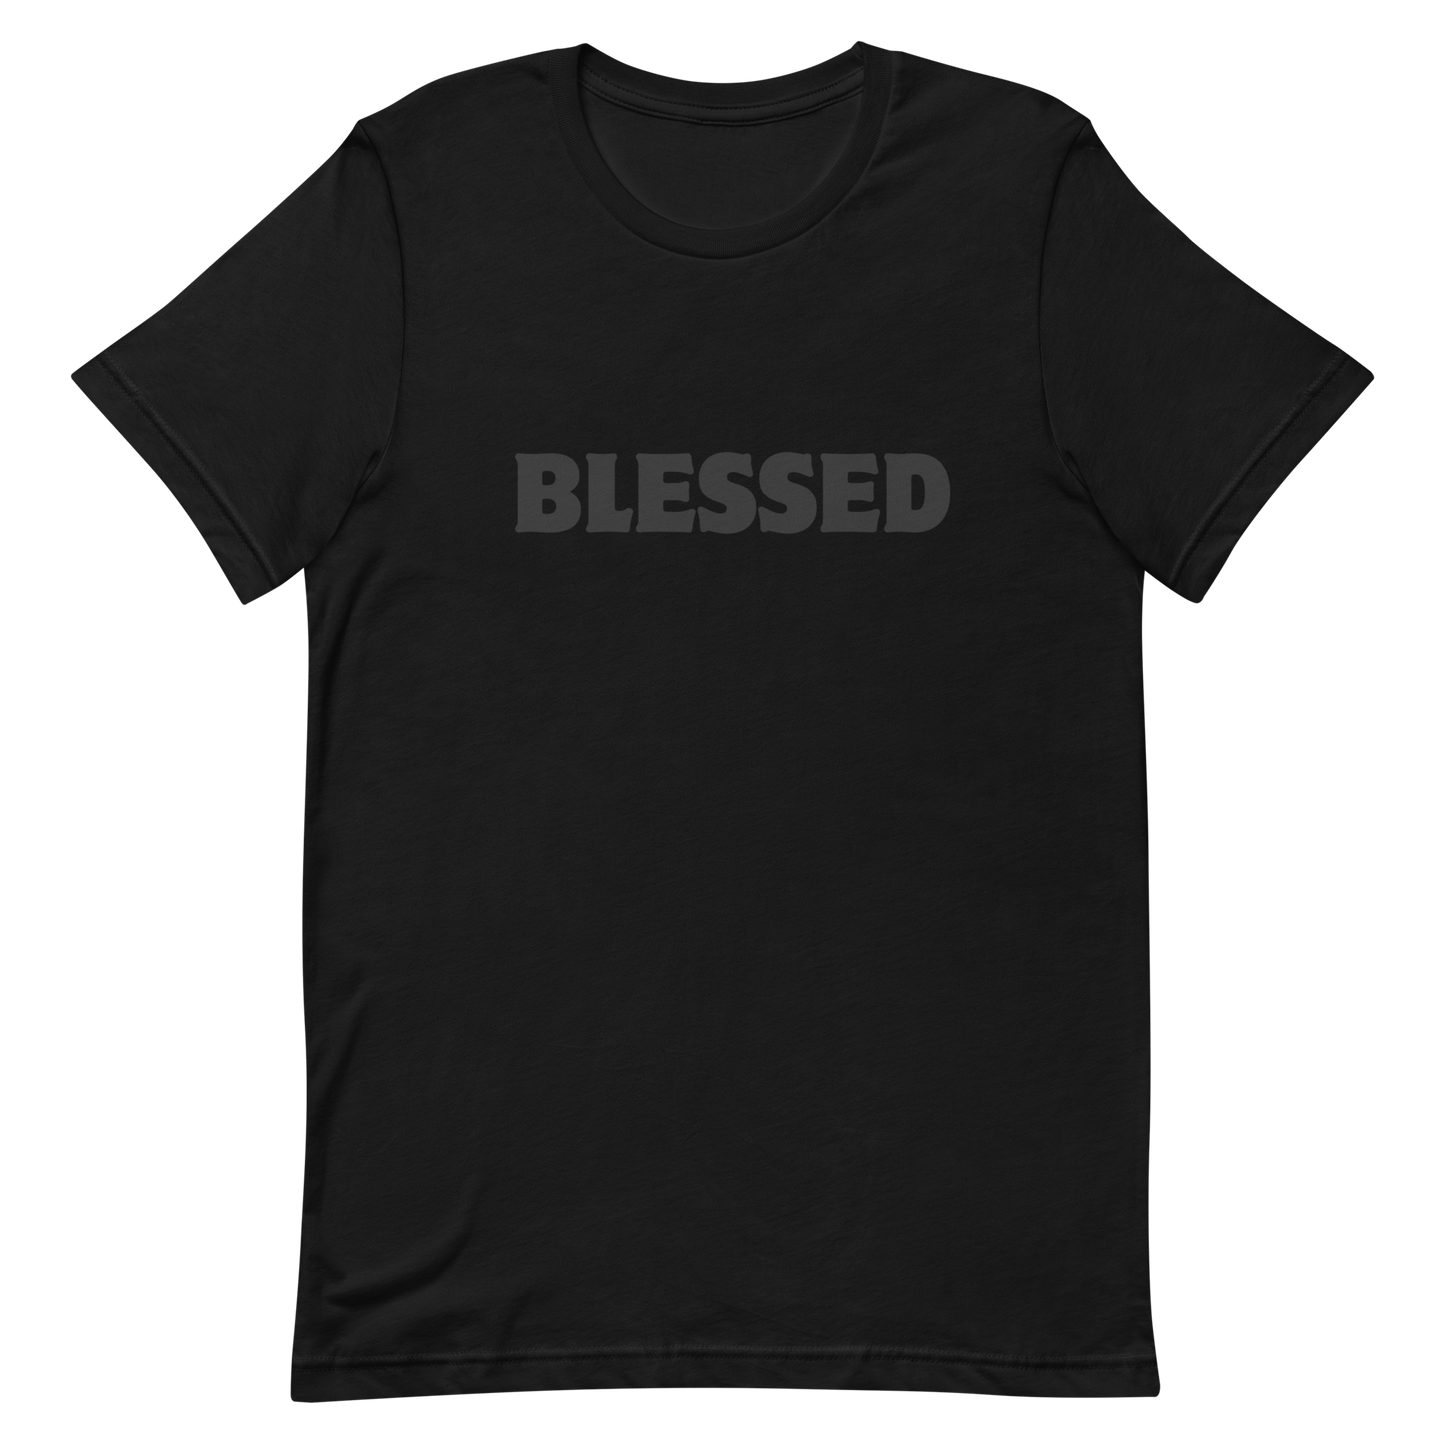 BLESSED tshirt